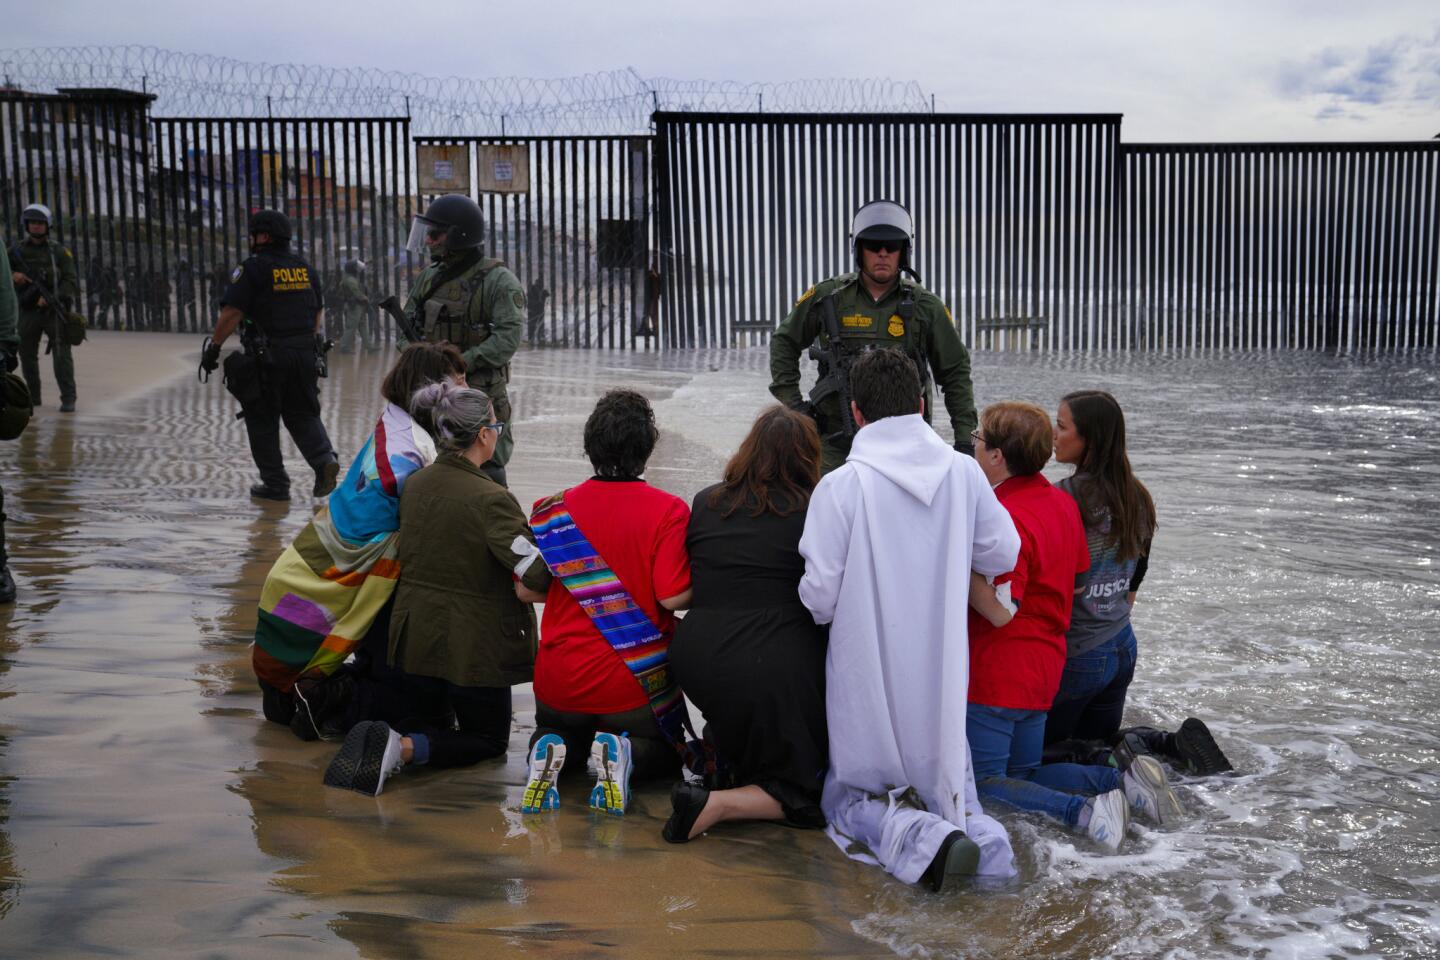 Faith at the border